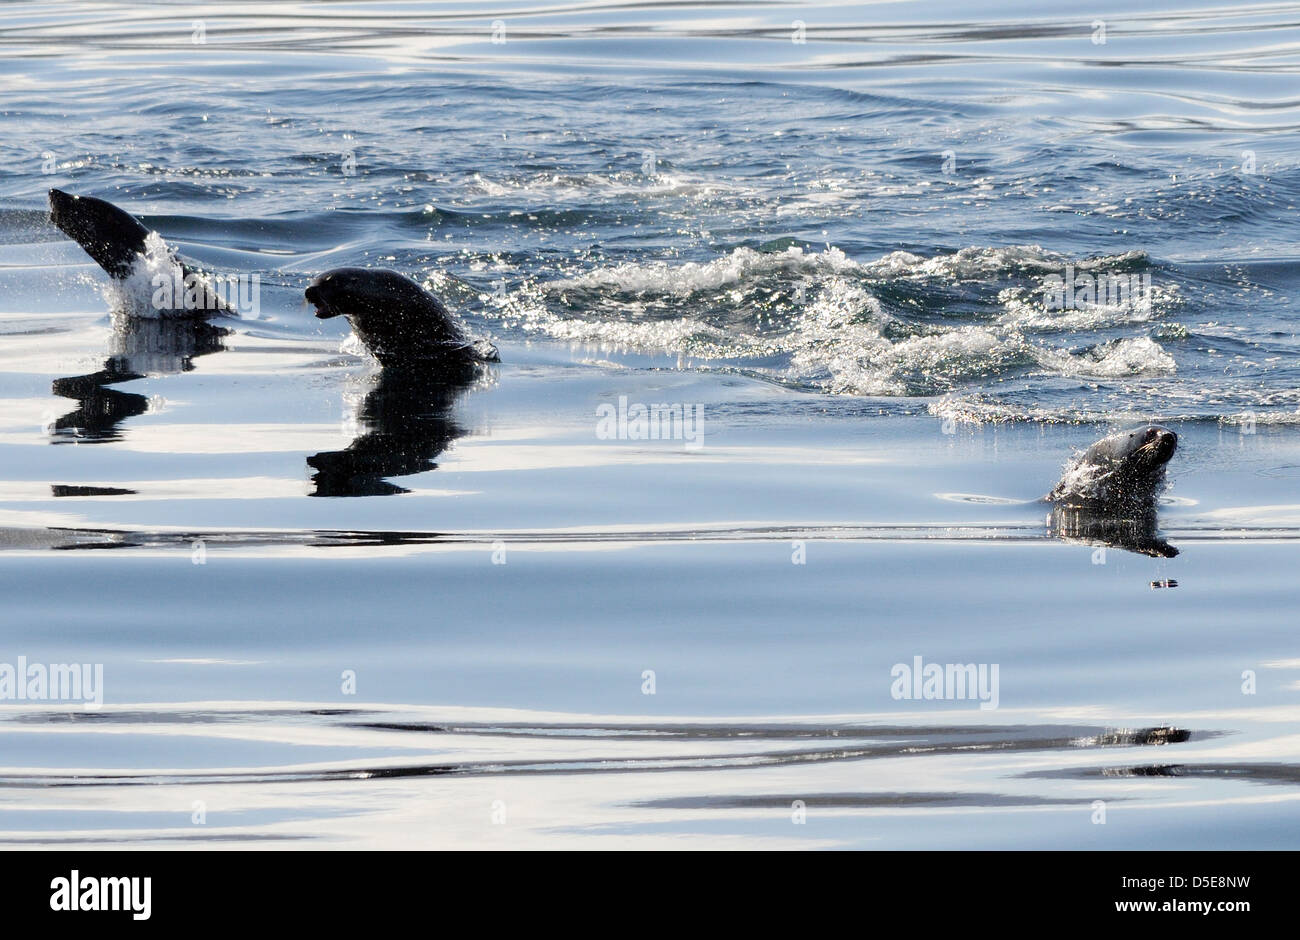 Foche orecchie, foche o leoni di mare, salto dal mare nei pressi di Capo Horn. Capo Horn Parco Nazionale. Foto Stock